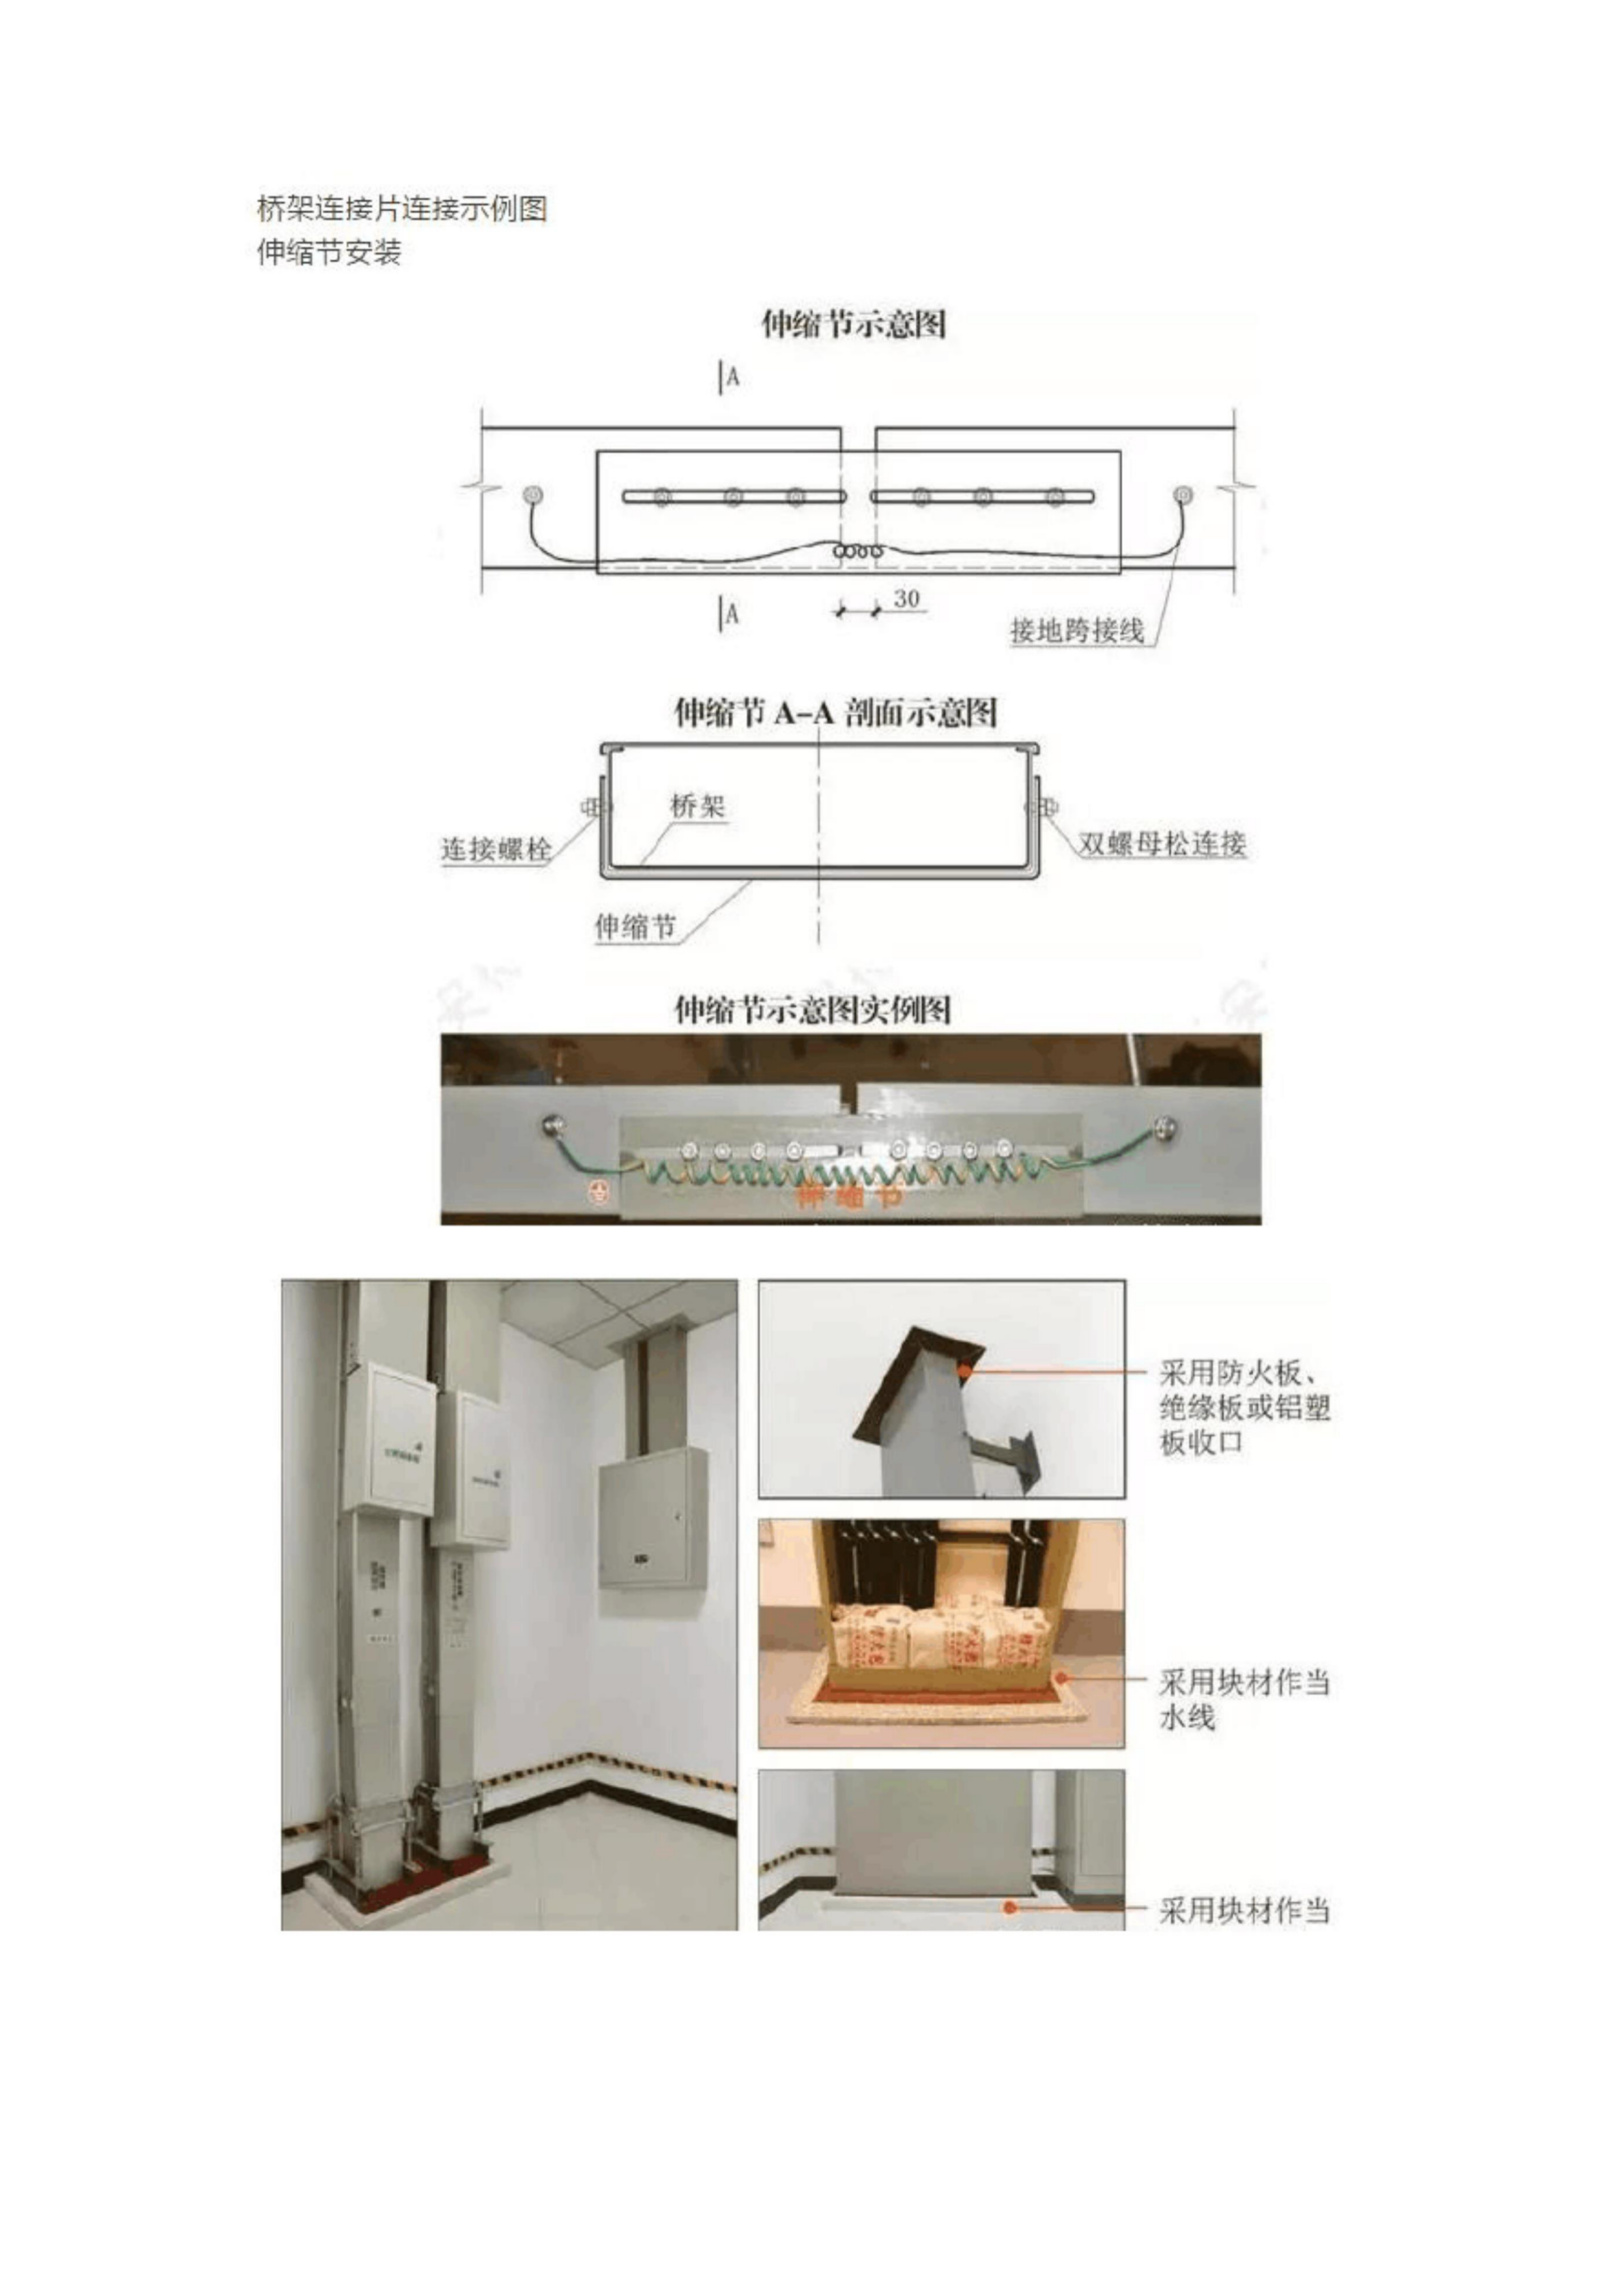 水电安装样板工程做法【图片集锦】插图(12)